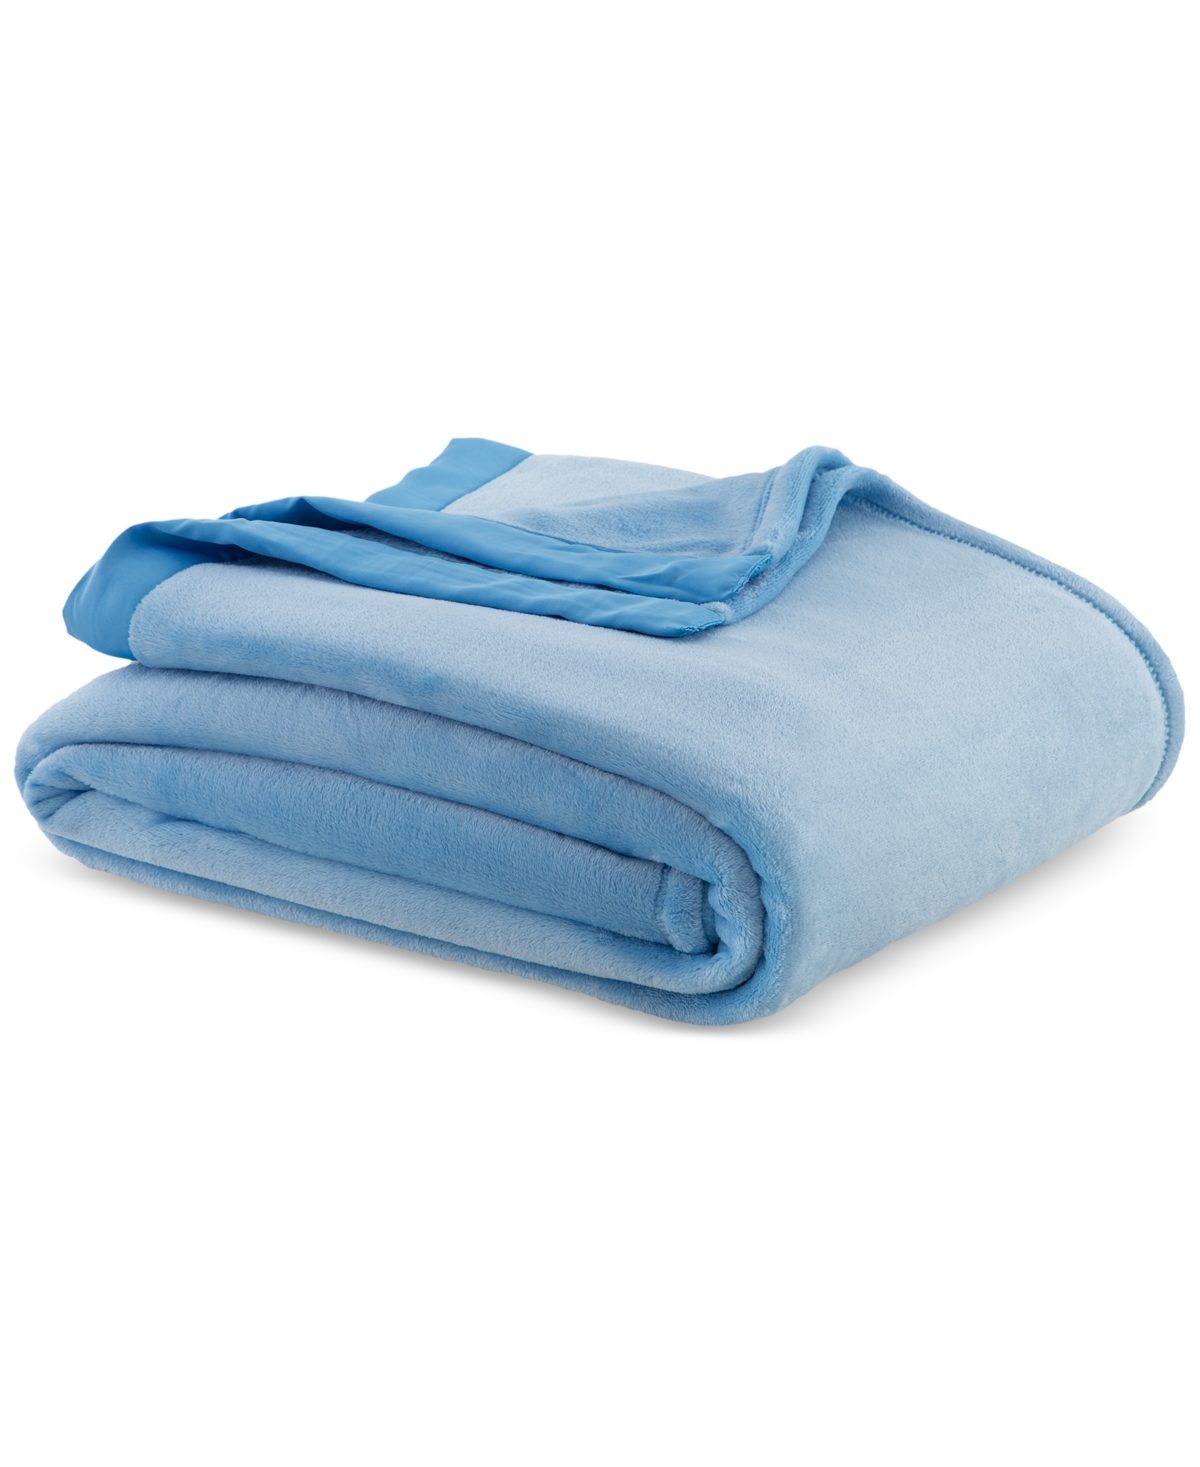 Berkshire Classic Velvety Plush Full/queen Blanket, Created For Macy's In Blue Plate